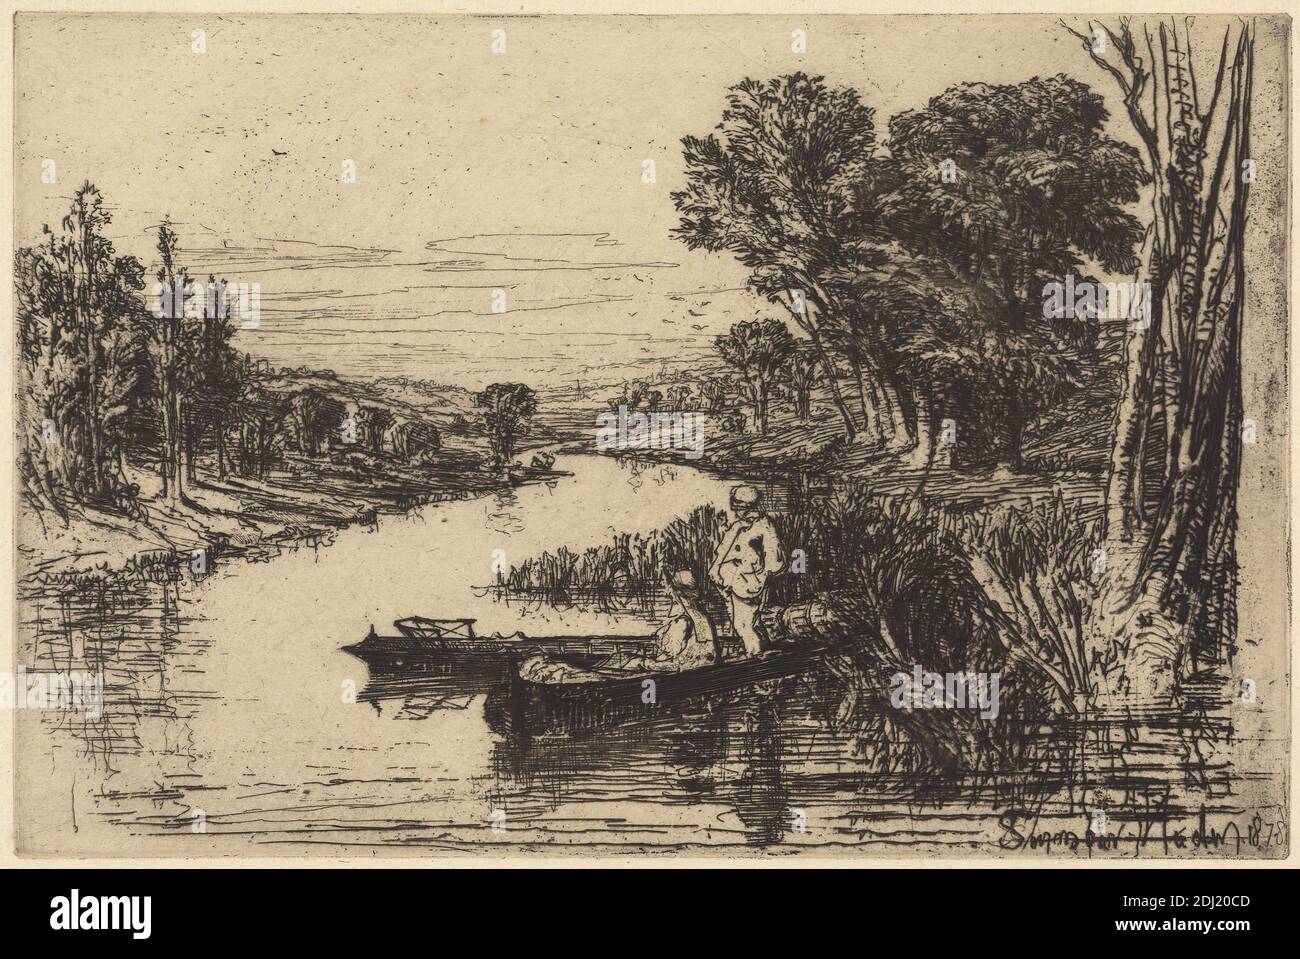 Thames Fishermen, nein 2, Francis Seymour Haden, 1818–1910, British, 1878, Ätzung und Trockenpunkt, mit Tellenton auf Medium, leicht strukturiert, cremefarbenes Papier, Blatt: 7 1/8 x 10 Zoll (18.1 x 25.4 cm), Teller: 5 7/8 x 8 7/8 Zoll (15 x 22.6 cm), und Bild: 5 7/8 x 8 7/8 Zoll (15 x 22.6 cm), Banken, Vögel, Boote, Schlauchboote, Fischer, Angeln, Genre Thema, Landschaft, Pots, Schilf, Reflexionen, Fluss, Sportkunst, Bäume, England, Europa, Themse, Vereinigtes Königreich Stockfoto